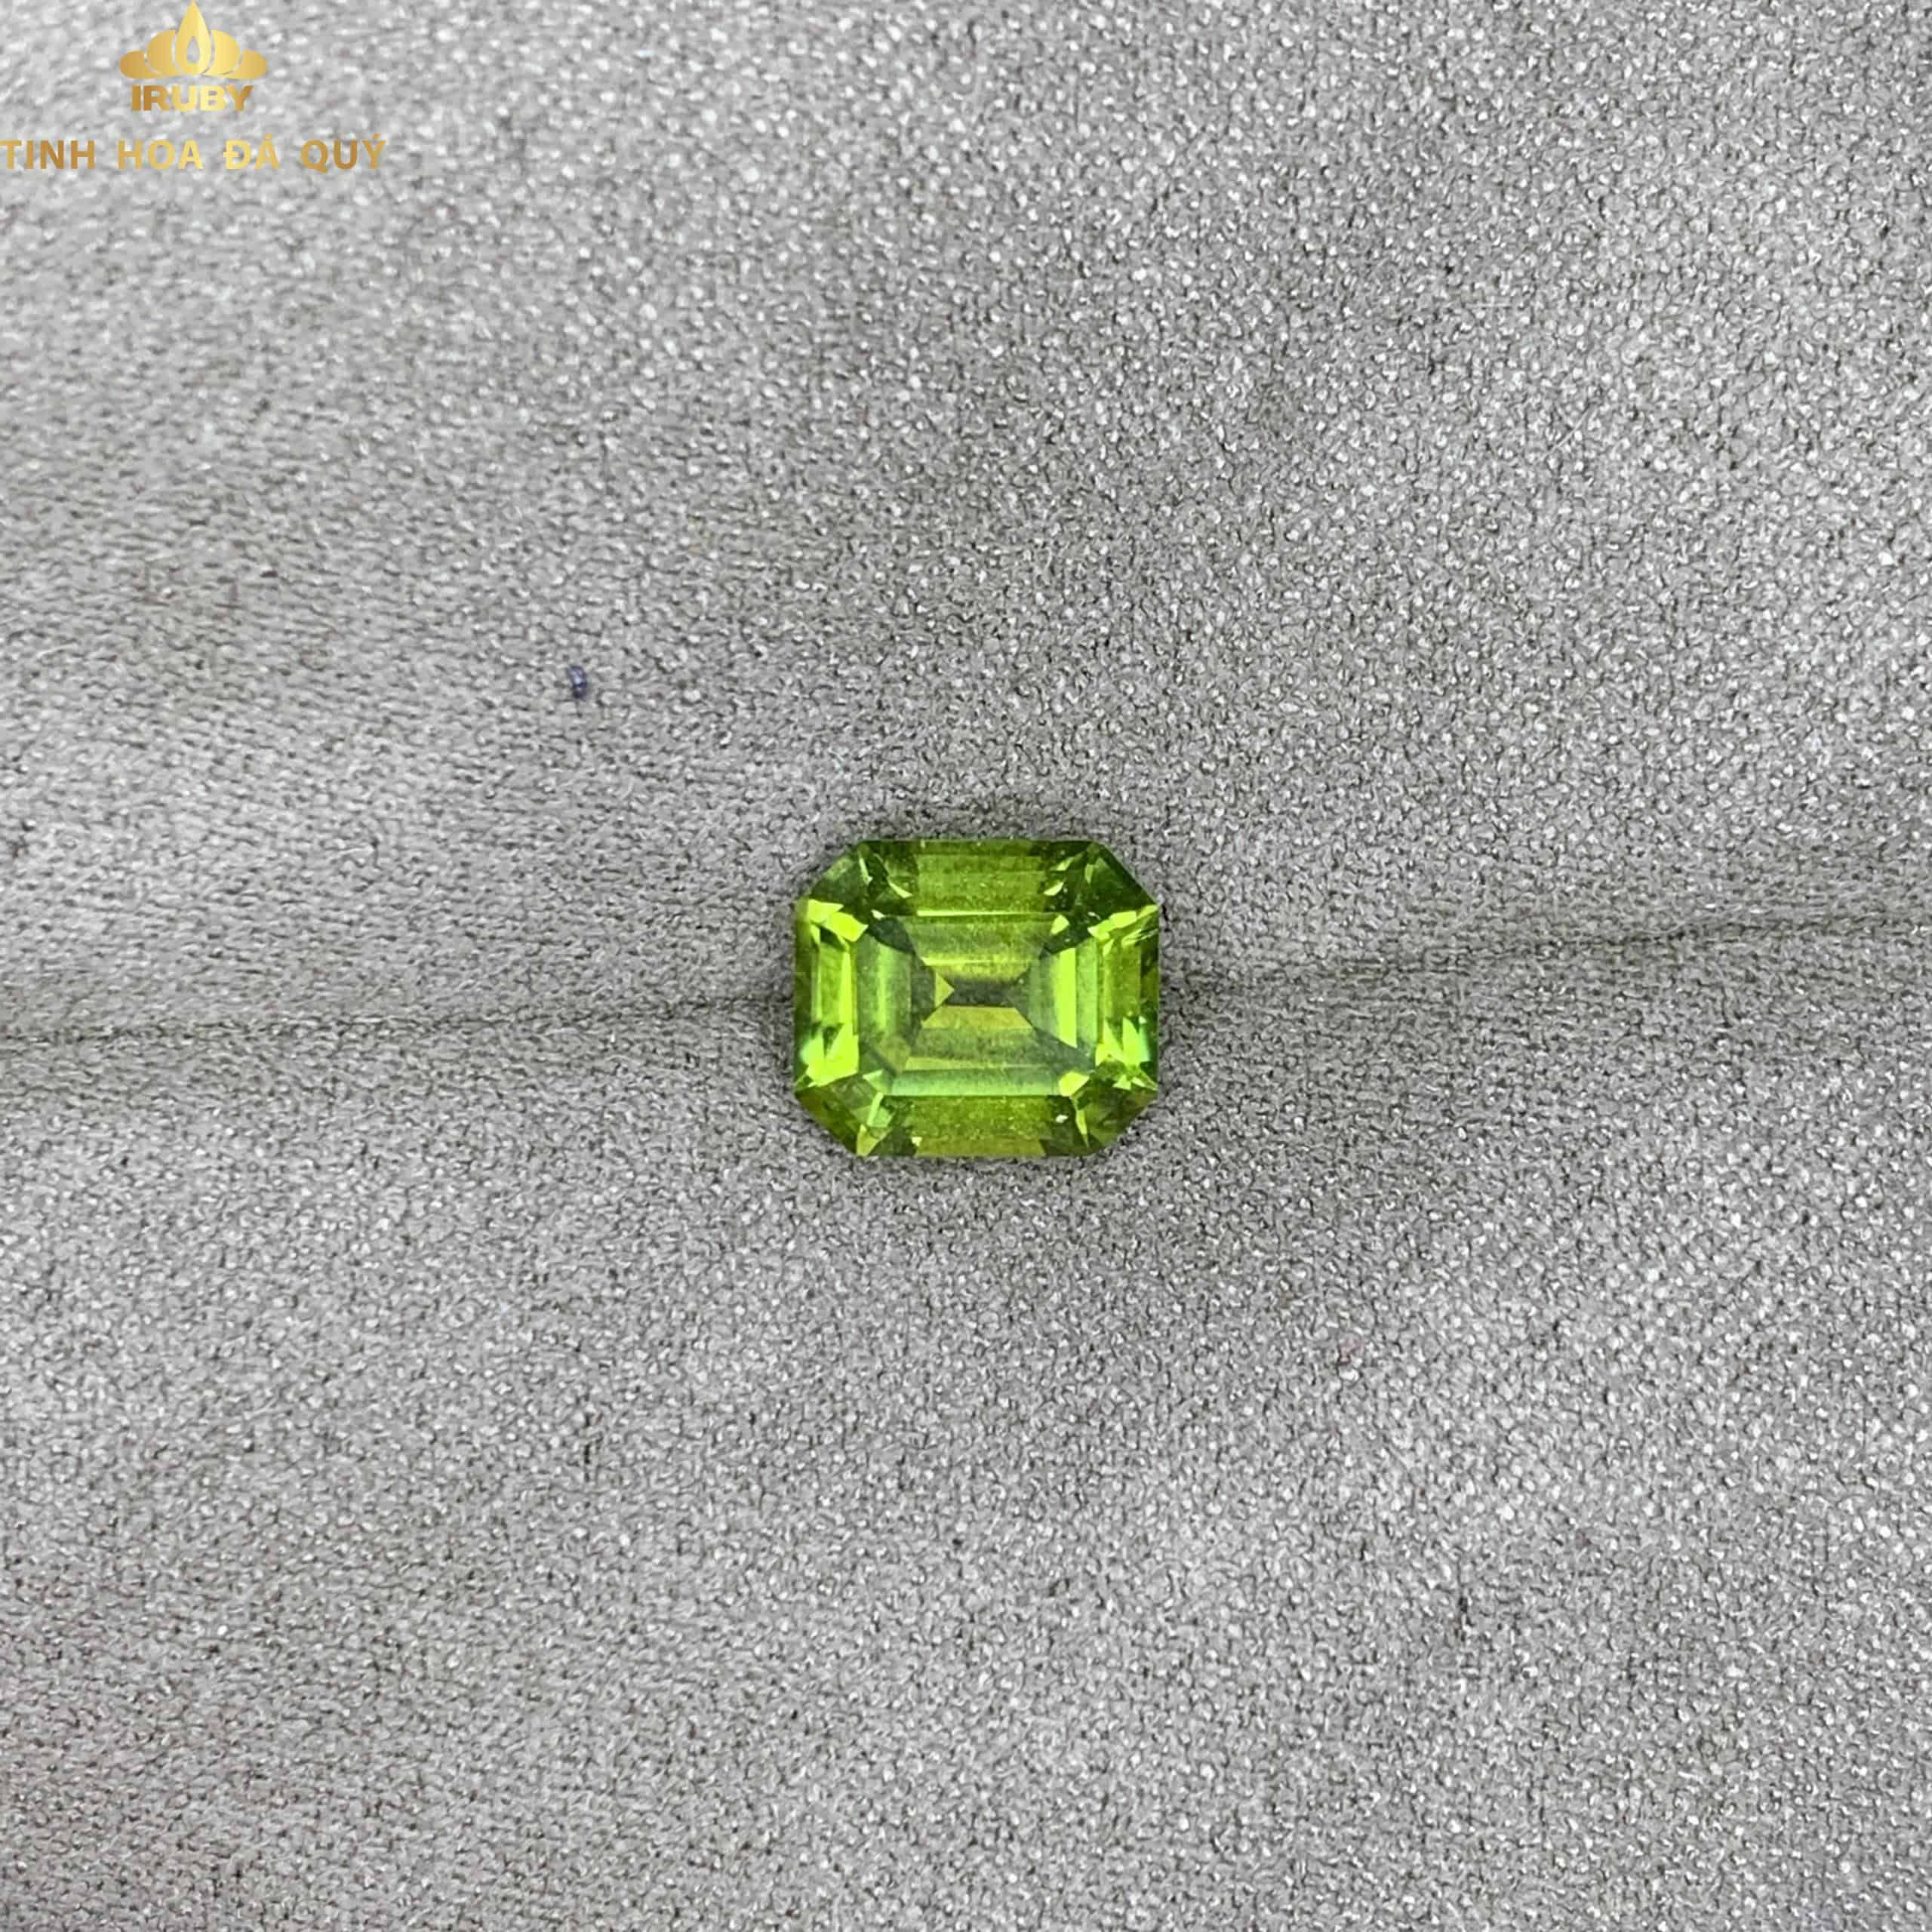 Viên Tourmaline Emerald xanh lá mạ 2,05ct - IRTM 233205 hình ảnh 4